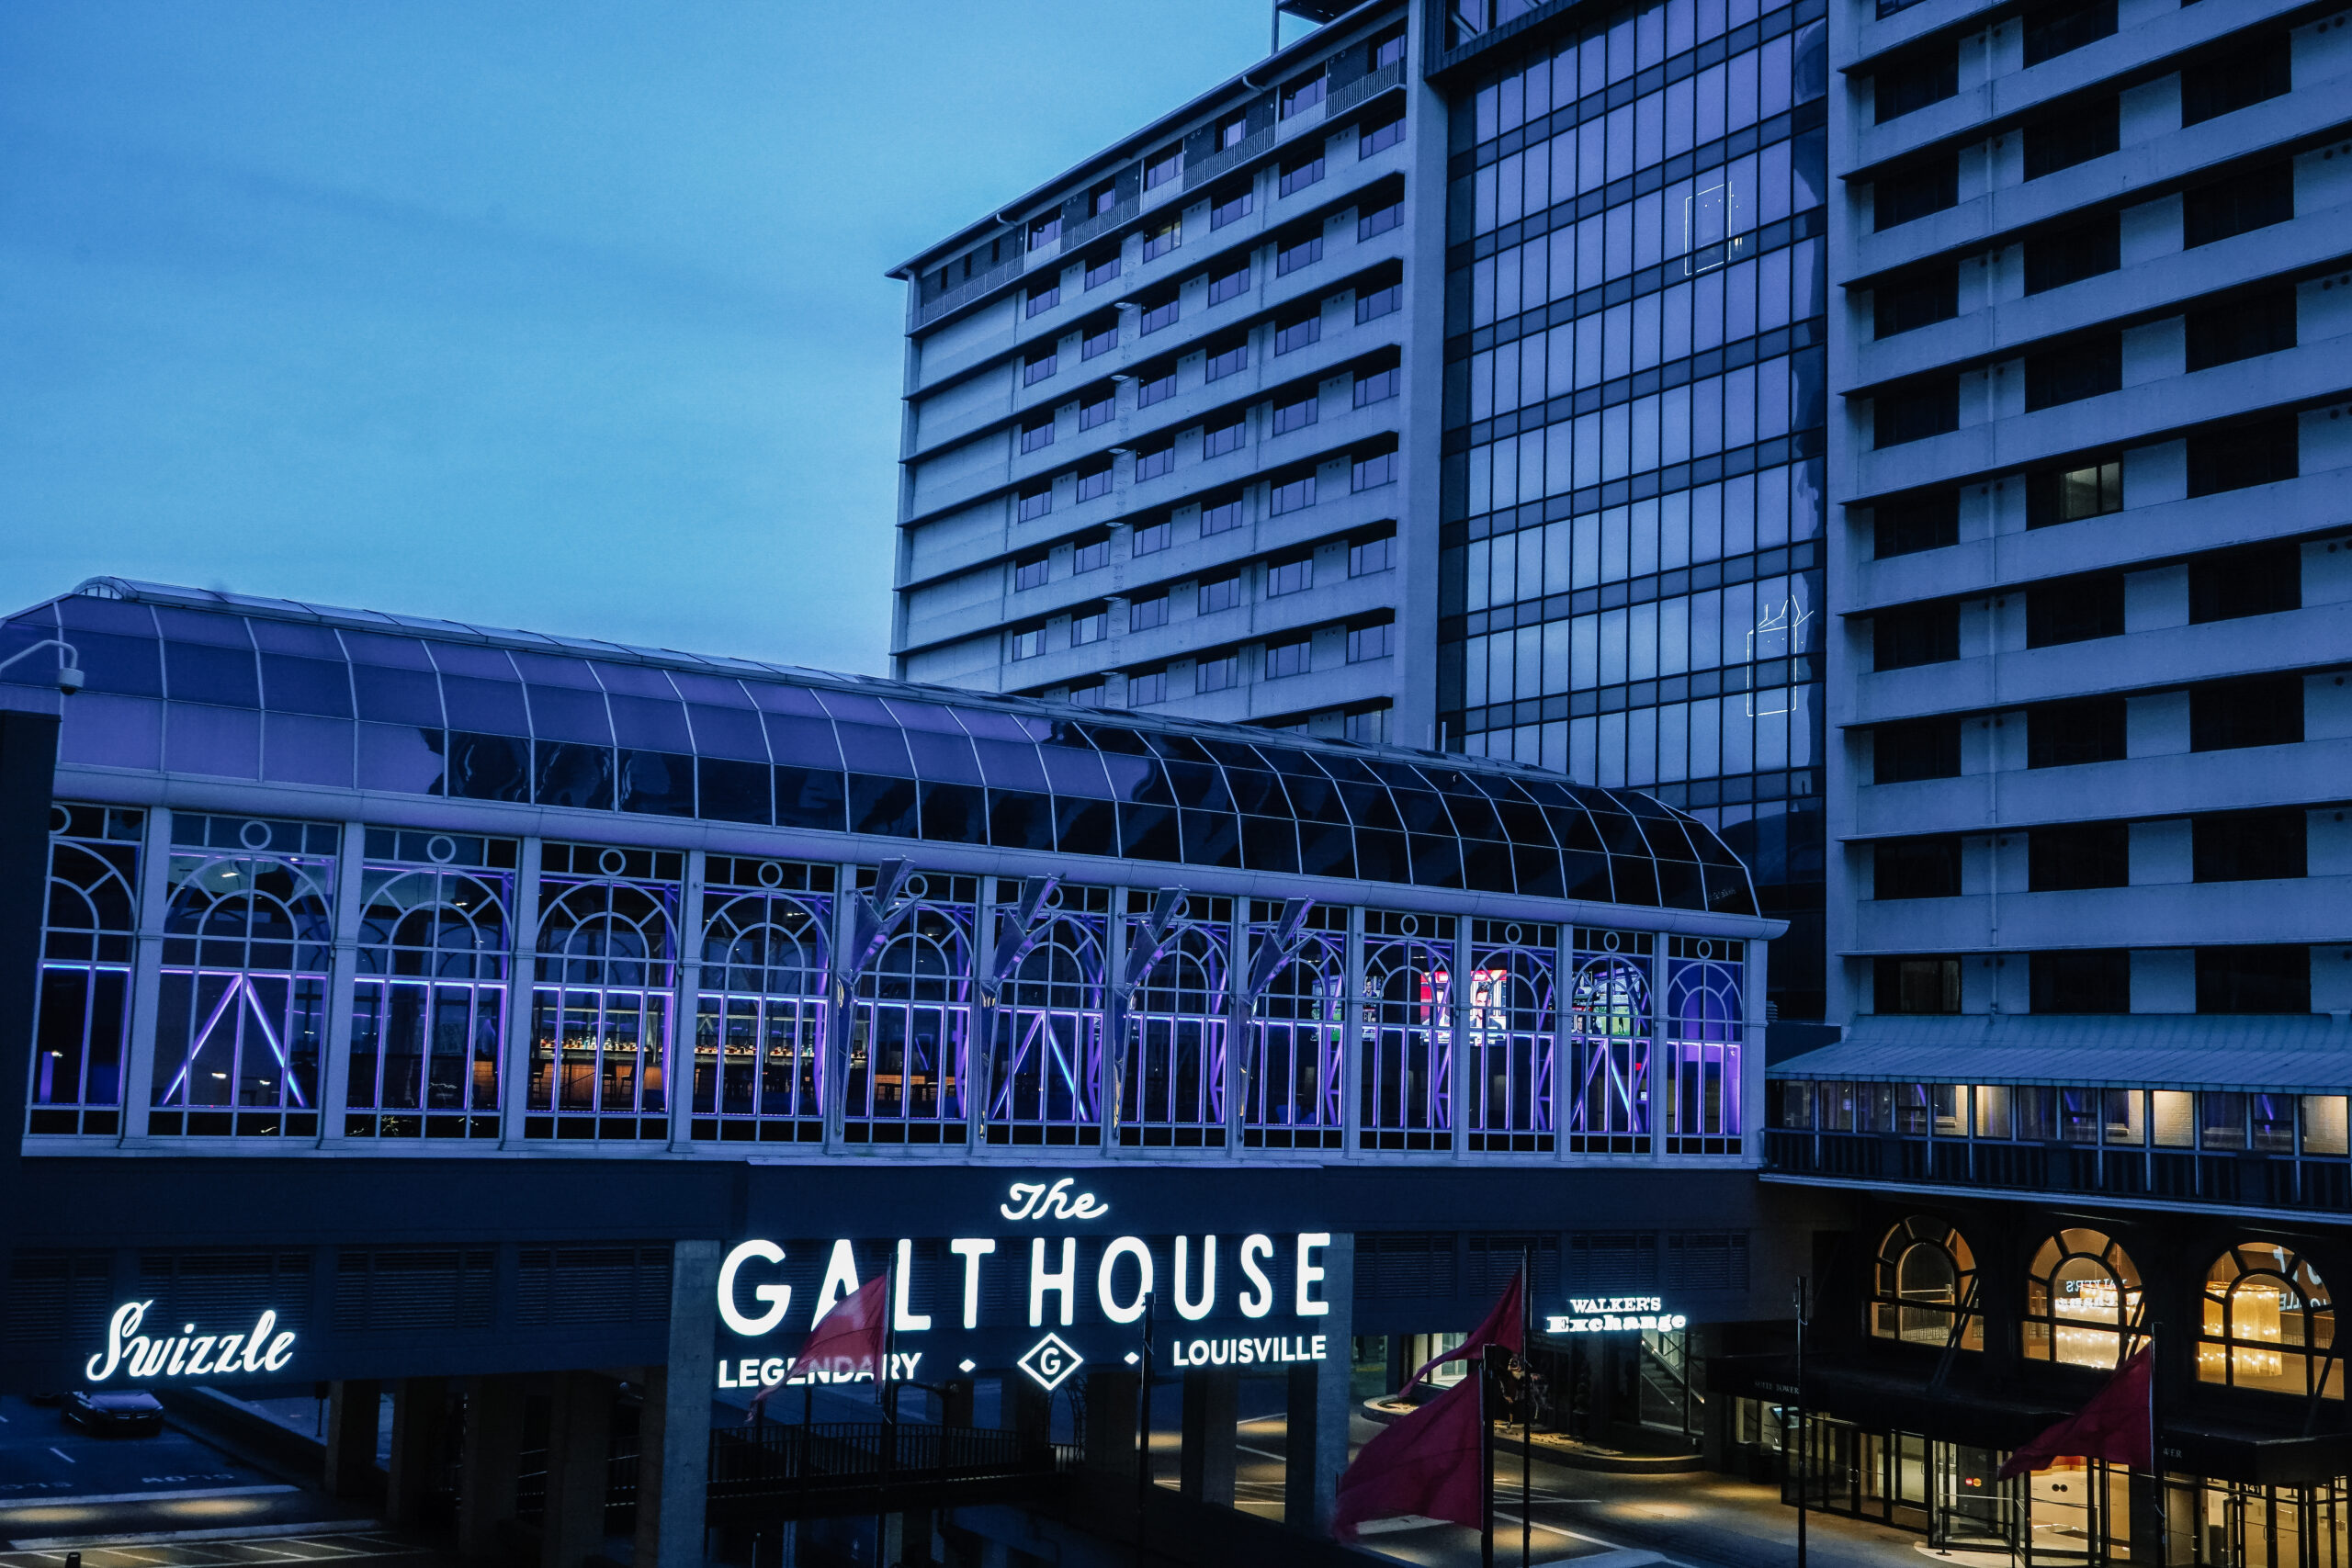 The Galt House Hotel